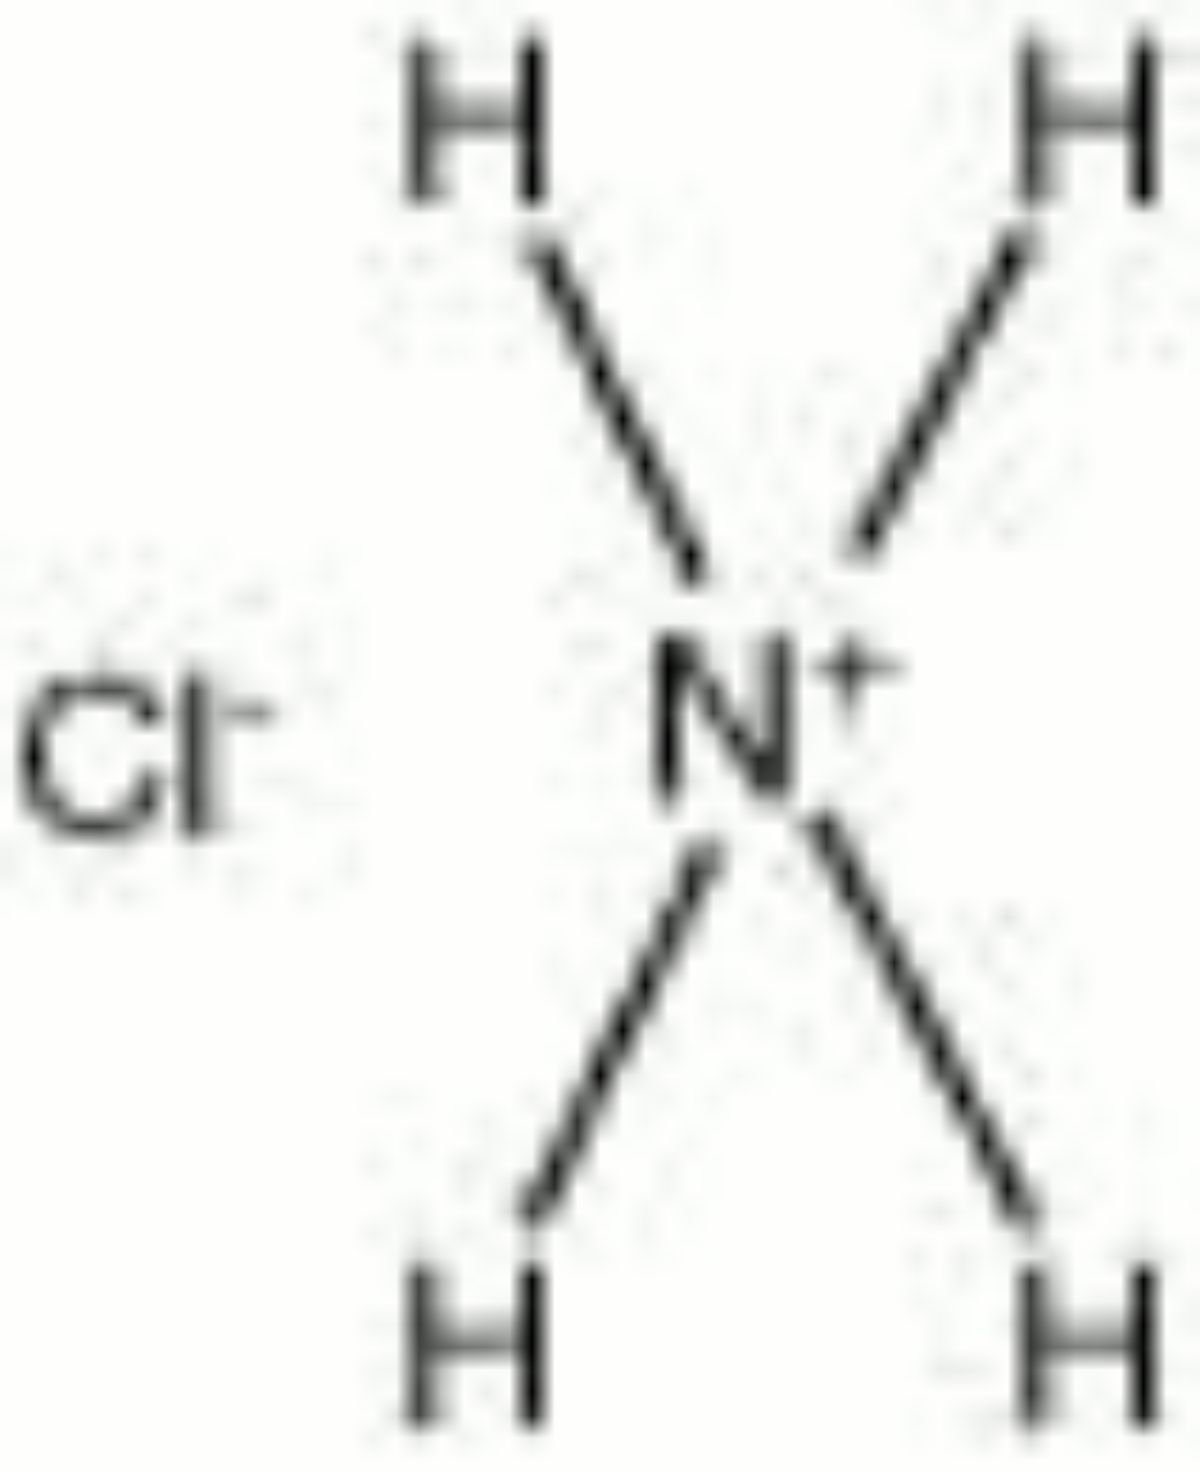 Nh4cl zn. Nh4cl структура Льюиса. Nh4cl структурная формула. Nh4cl графическая формула. Структурная формула в хлориде аммония nh4cl.